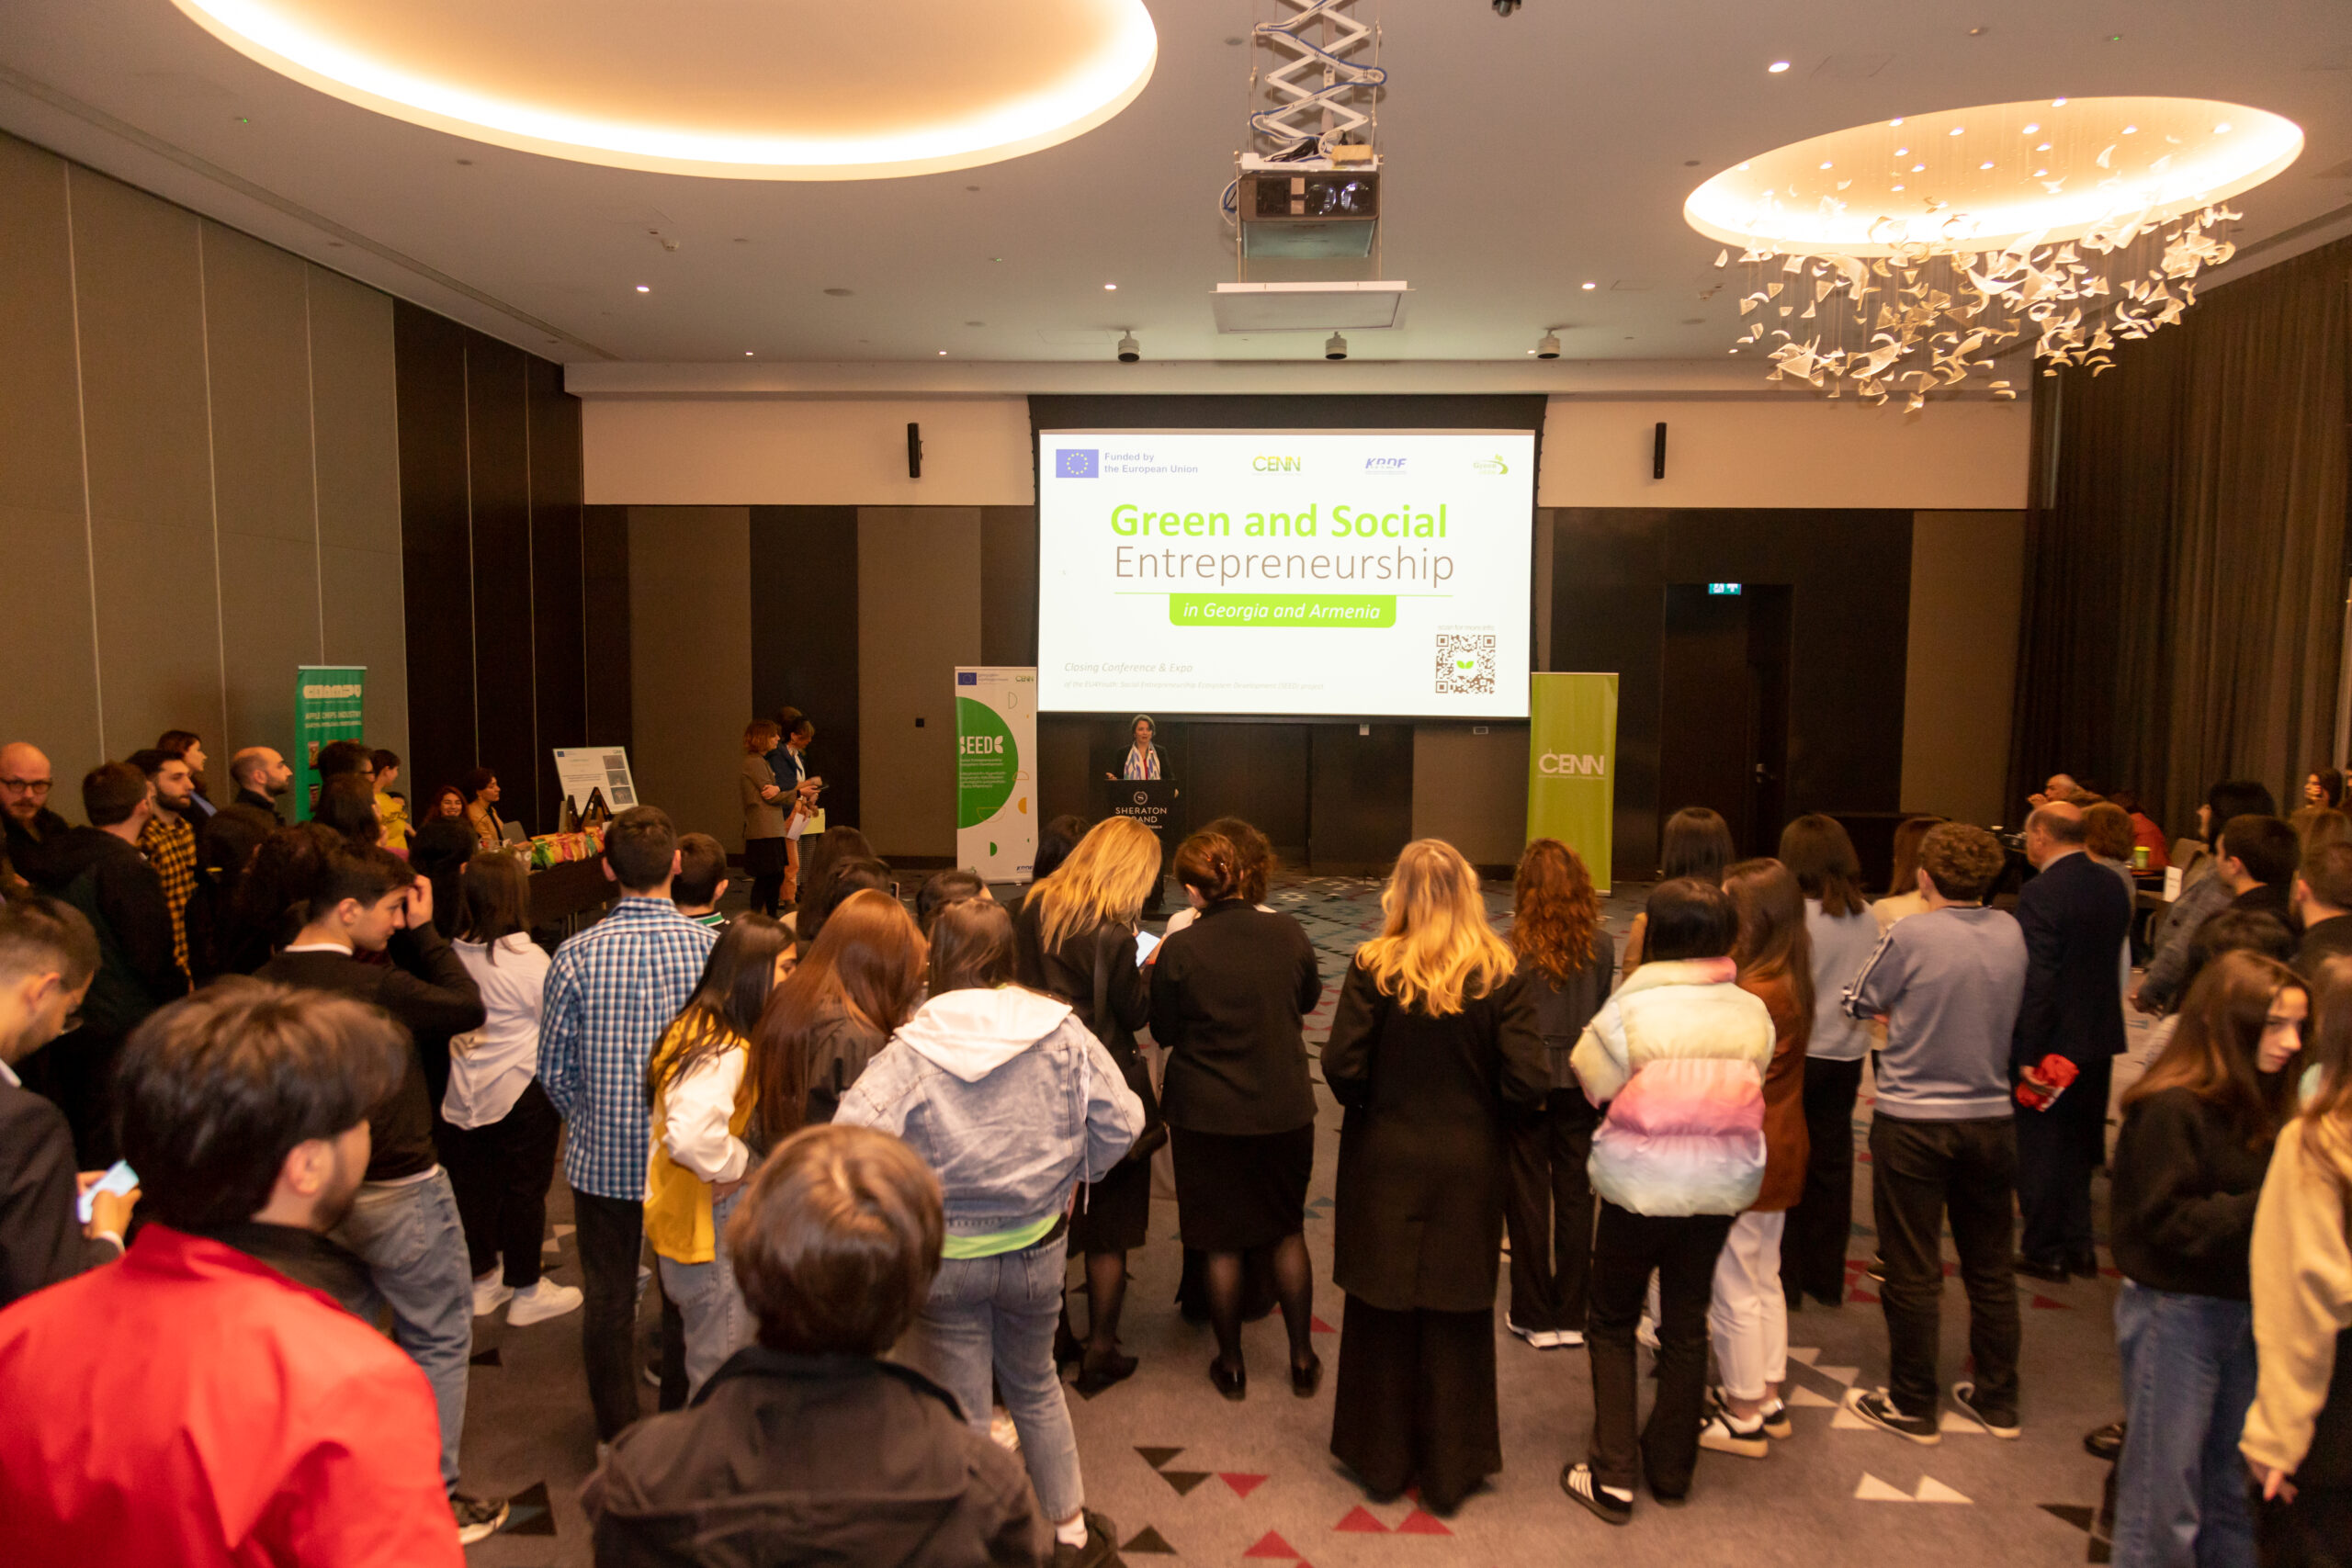 ევროკავშირმა და CENN-მა ახალგაზრდა სოციალური და მწვანე მეწარმეების შესახებ პროექტის დახურვით კონფერენციას უმასპინძლეს